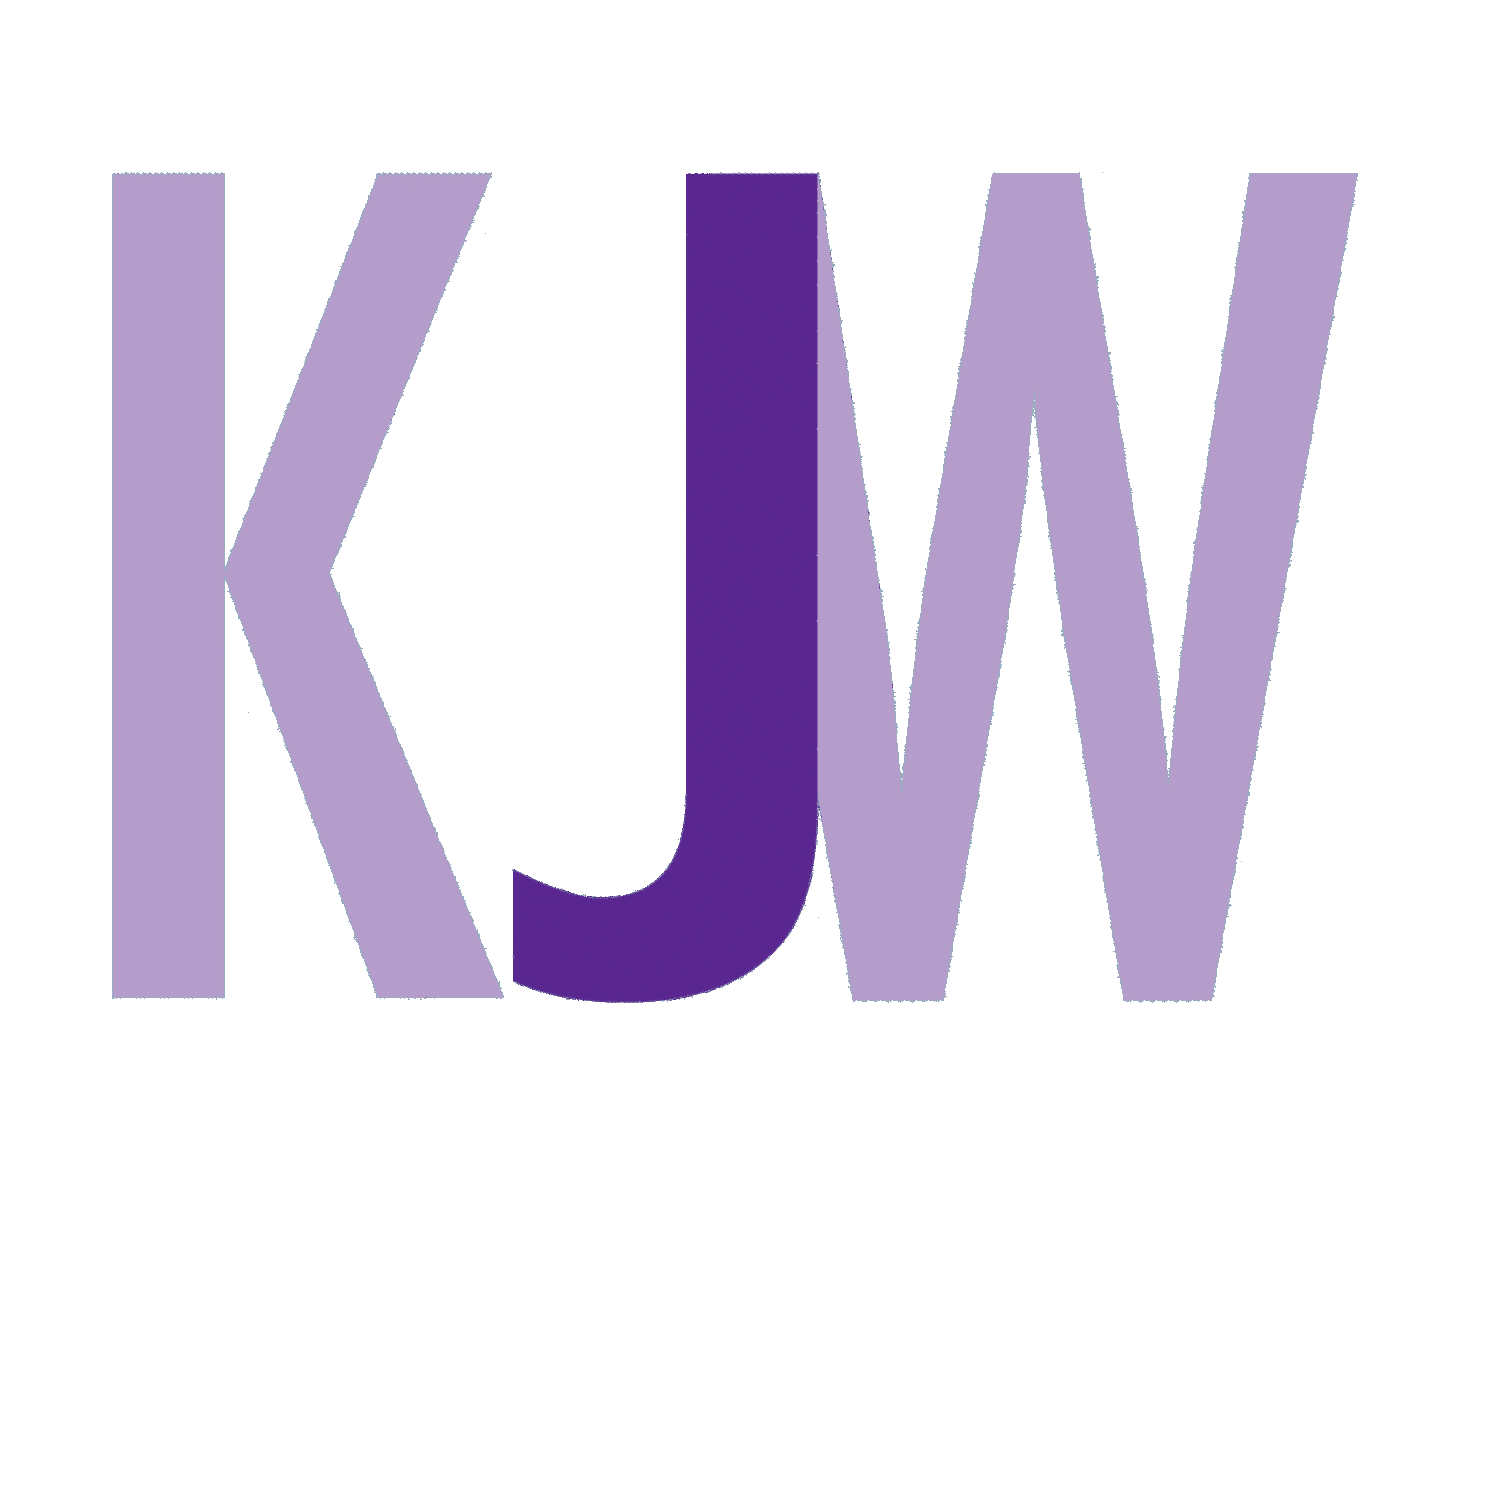 KJ Wall & Associates Ltd.